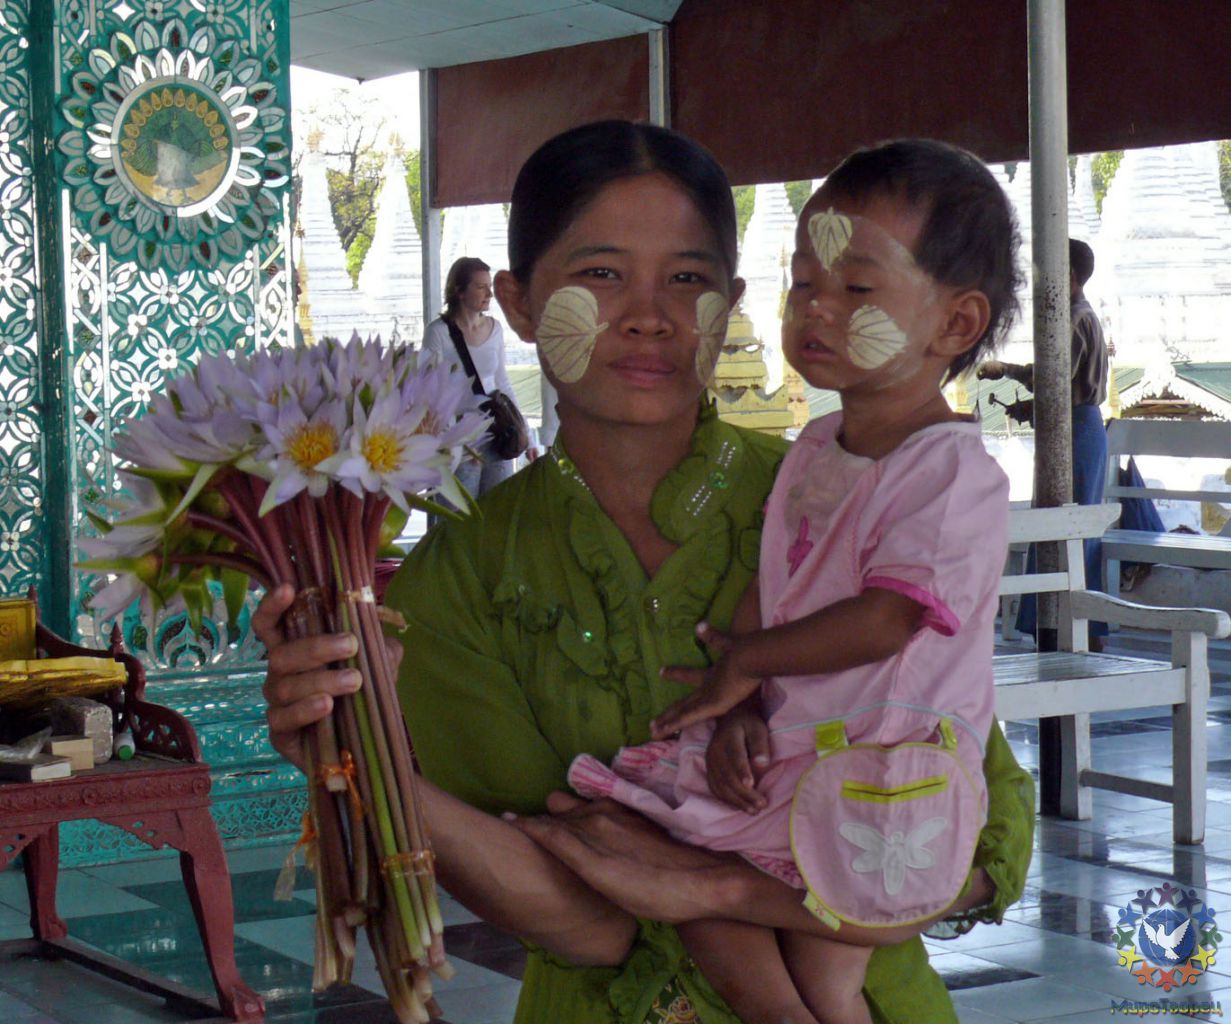 в храме Биоматрицы - Мьянма 2011 (виды, природа, лица) II часть